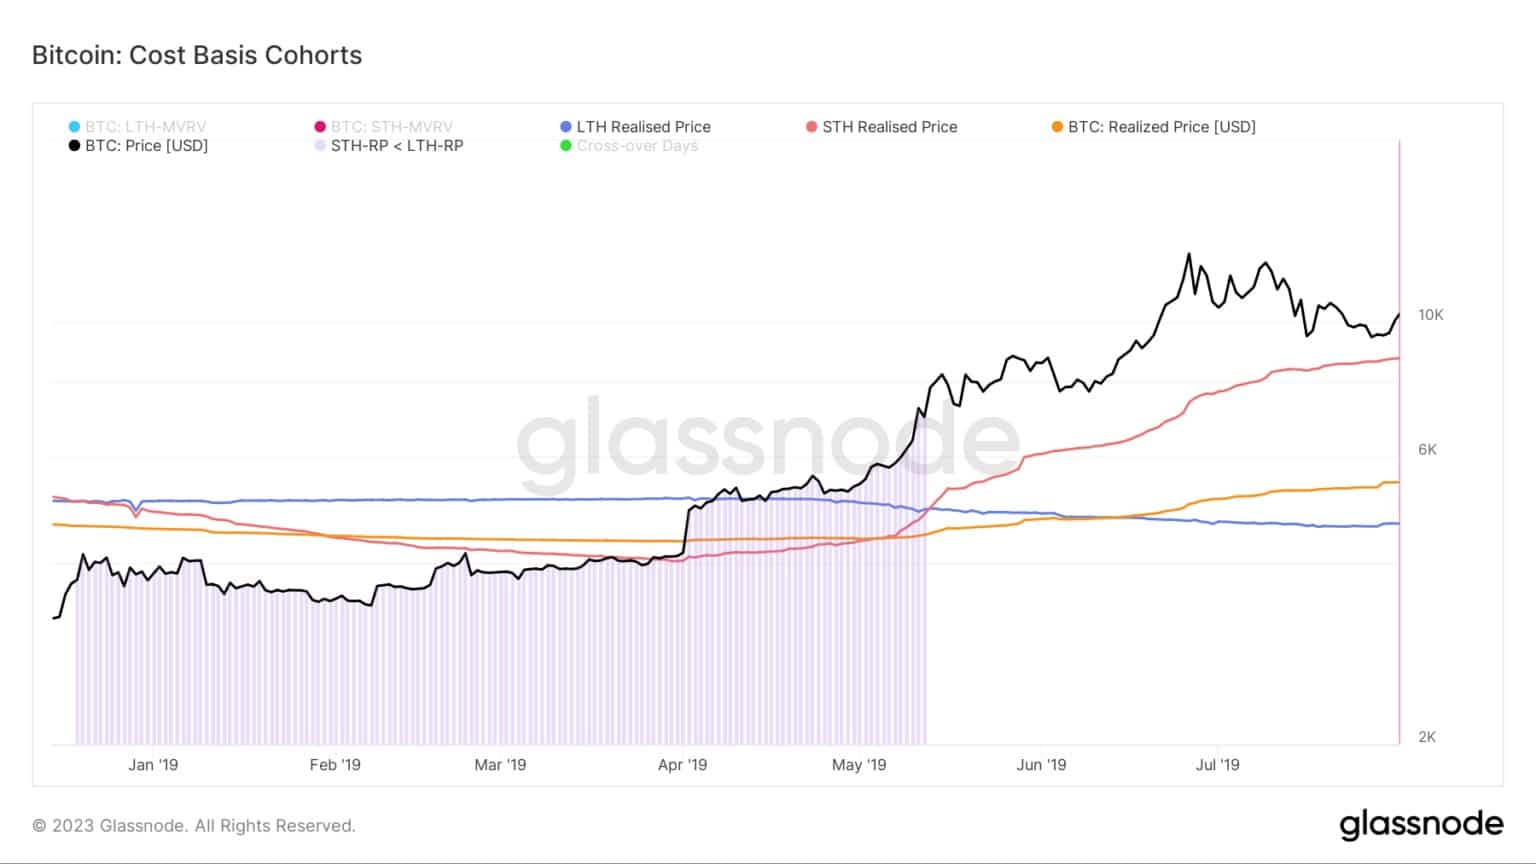 Grafico che mostra il costo-base per le coorti di Bitcoin durante il mercato orso 2018/2019 (Fonte: Glassnode)